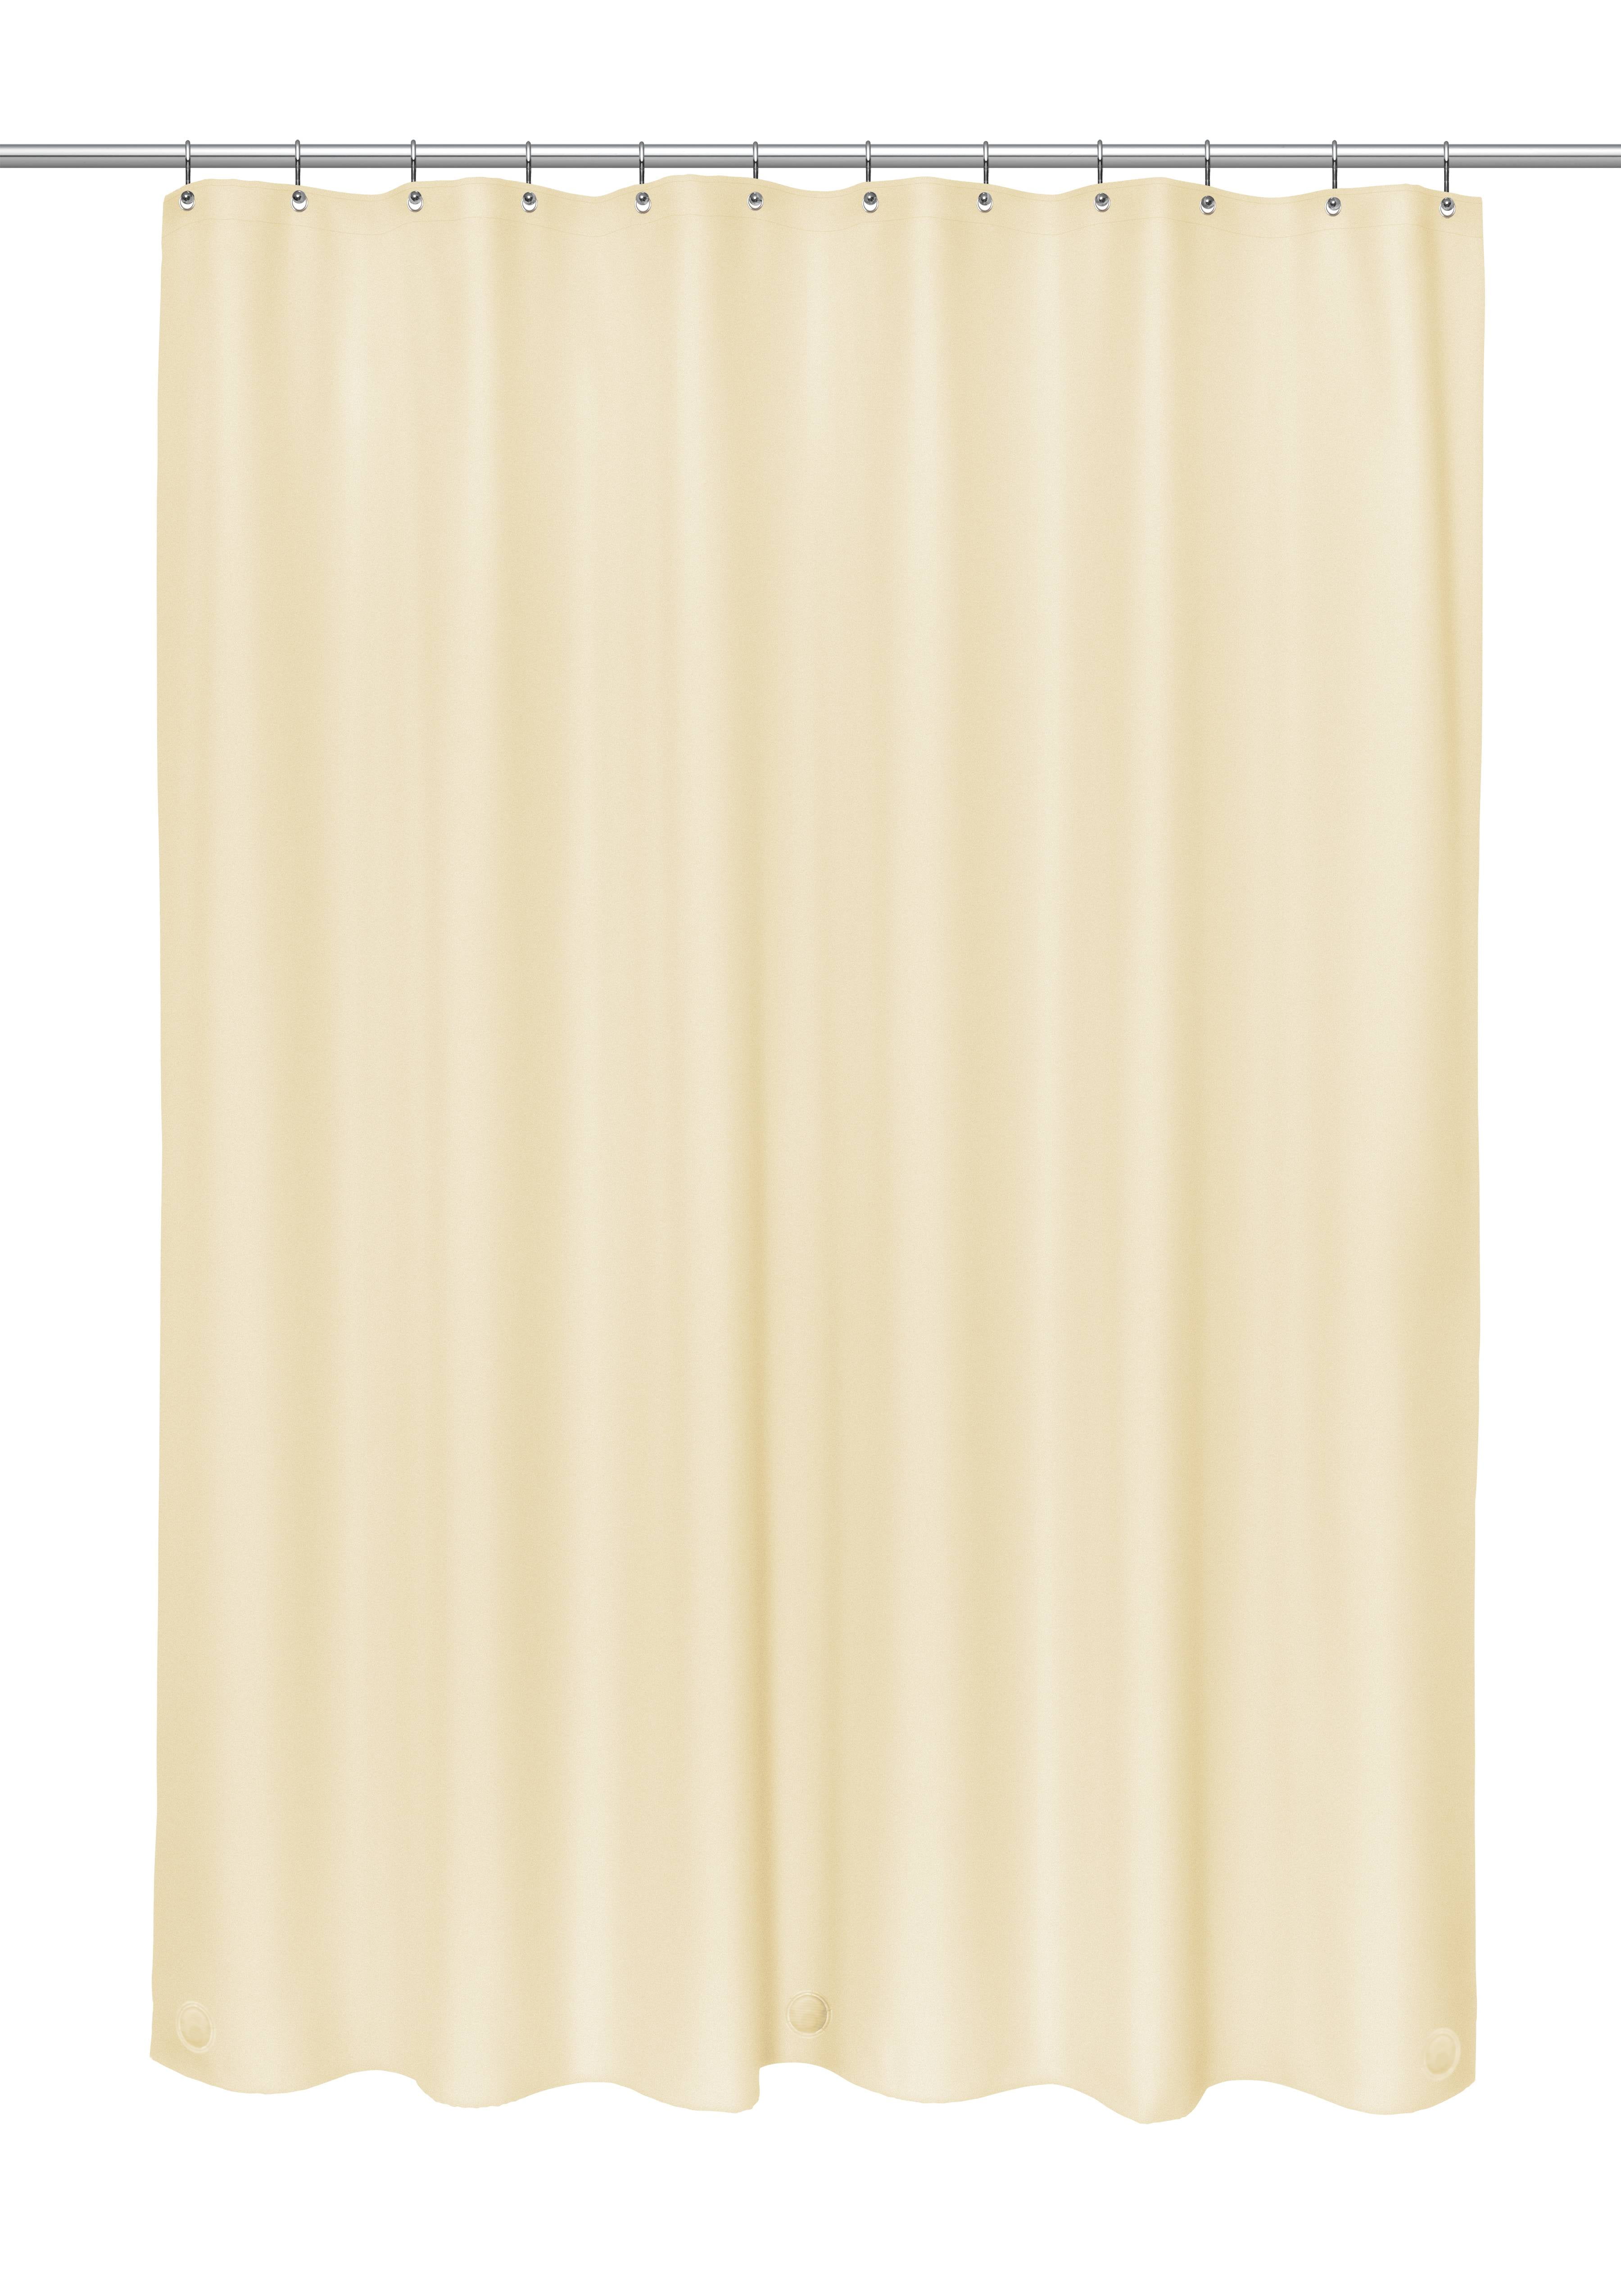 12 Pack Carnation Home Fashions 10 Gauge Peva Gauge Vinyl Shower Curtain Liner Ivory